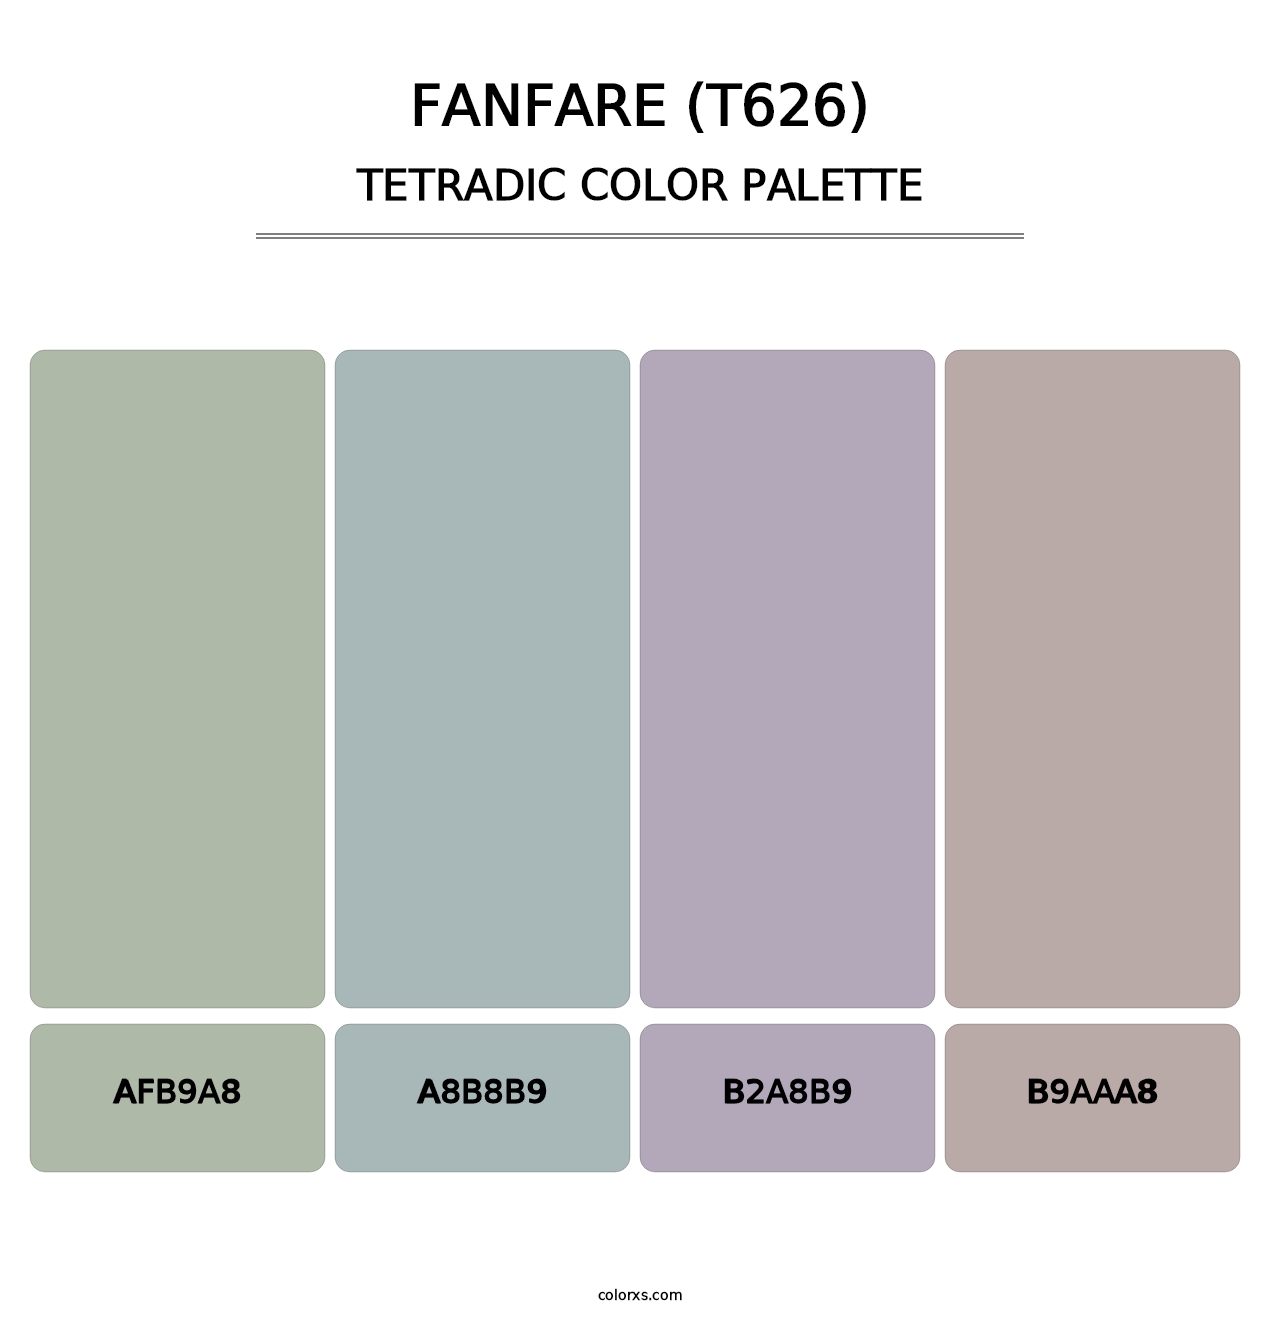 Fanfare (T626) - Tetradic Color Palette